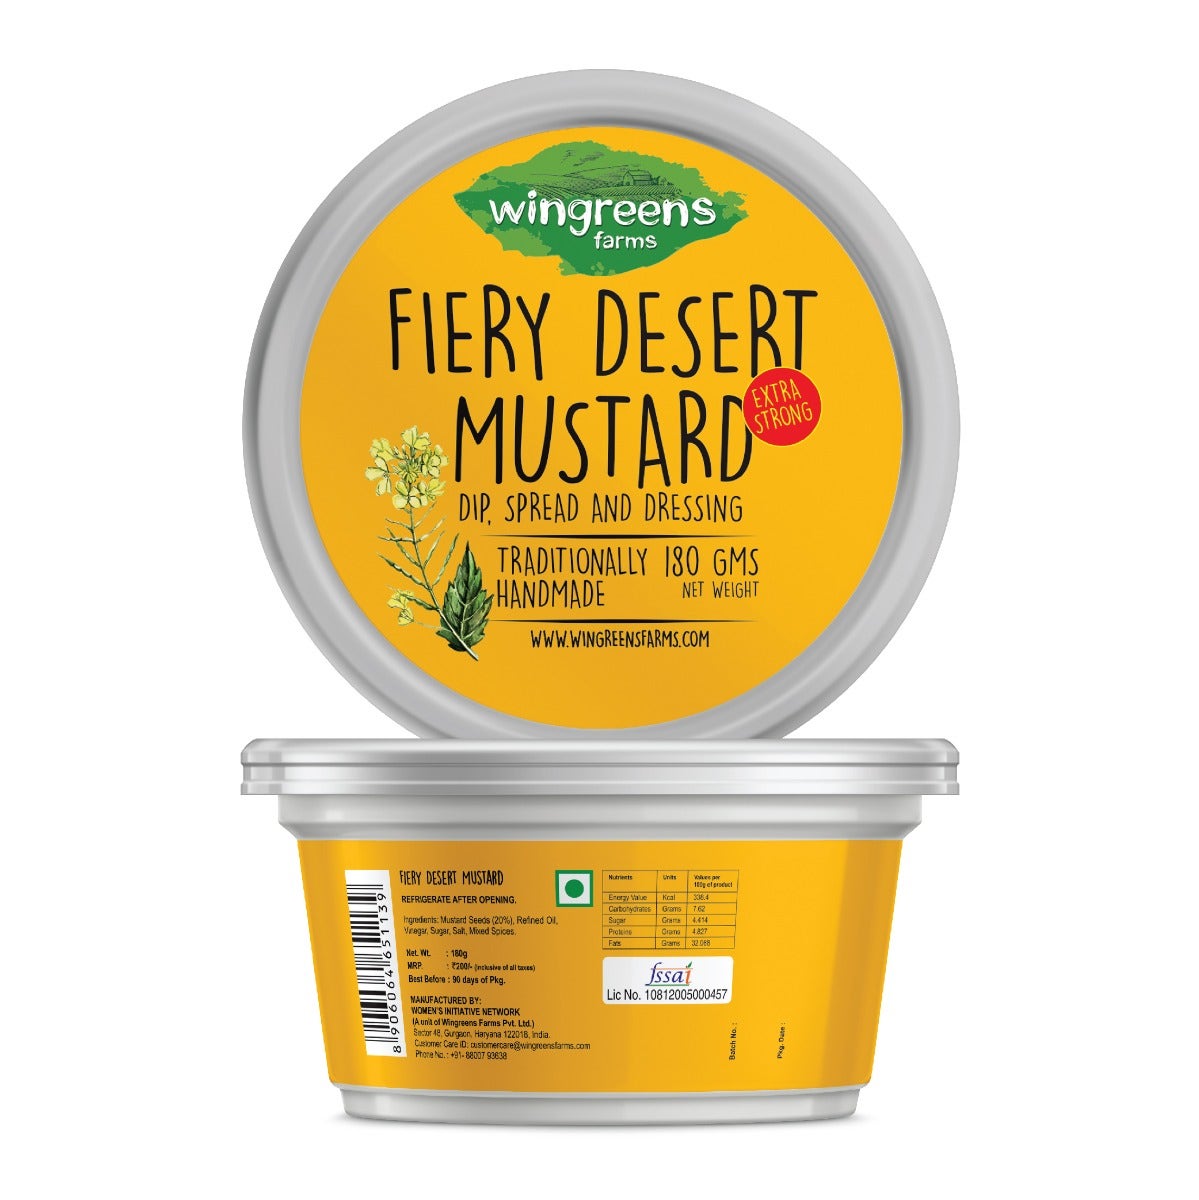 fiery desert mustard nutrition